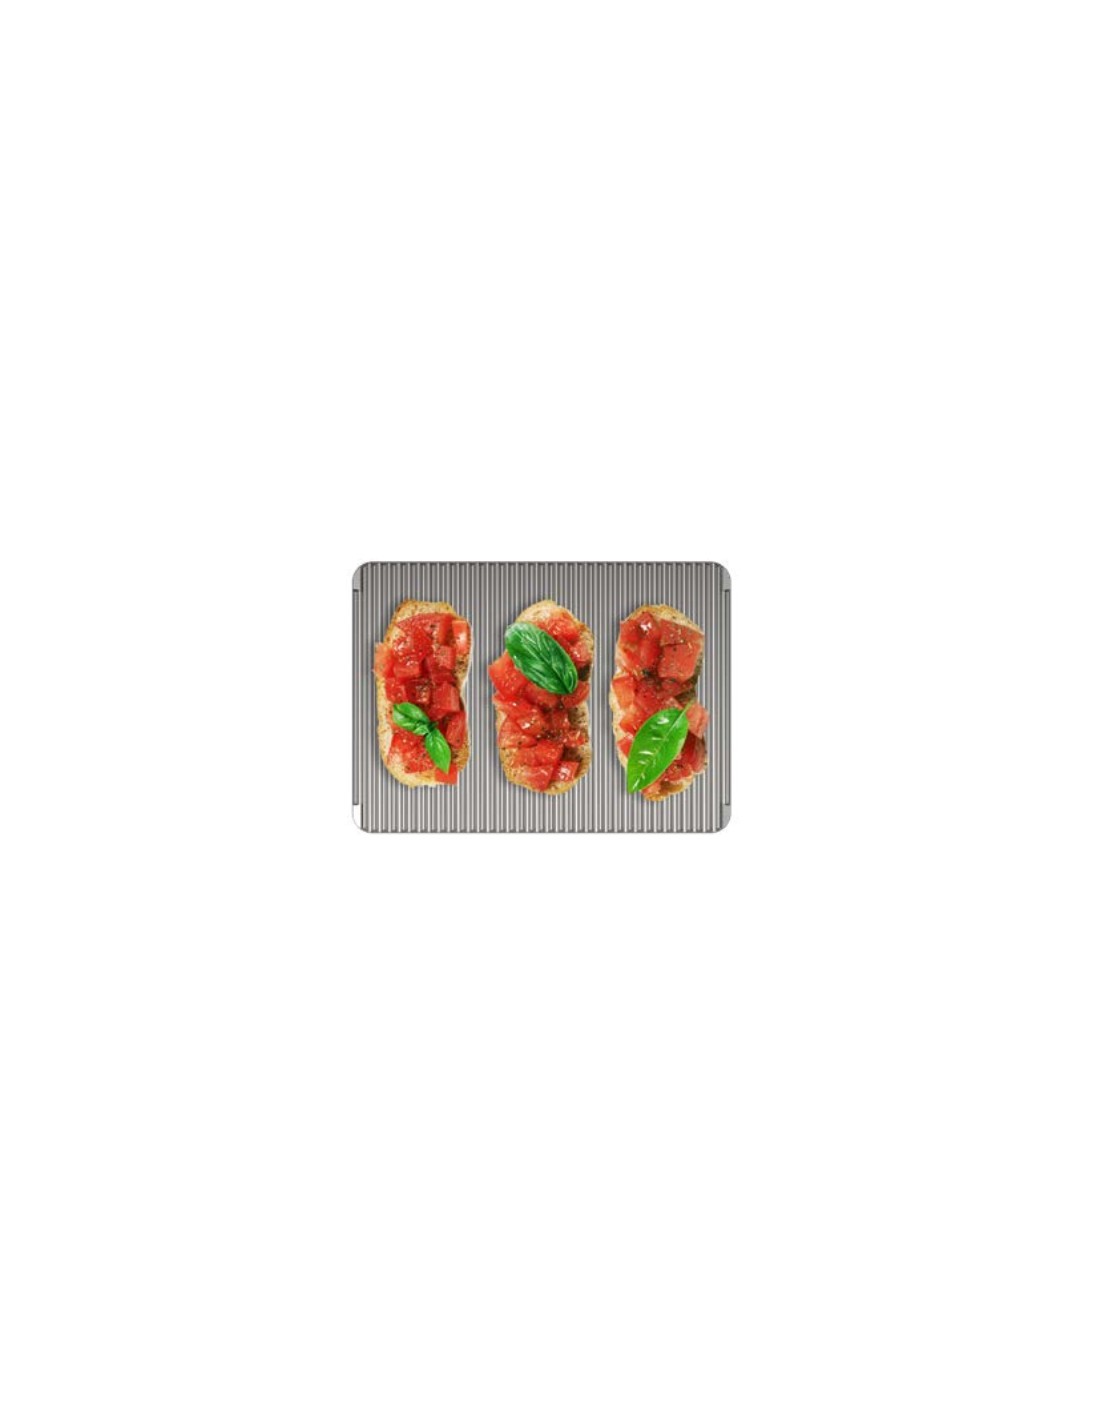 Teglia doppia superficie - Liscia e rigata per doppio utilizzo - Ideale per pizza, focaccia, pane e panini - Focaccia e panini p